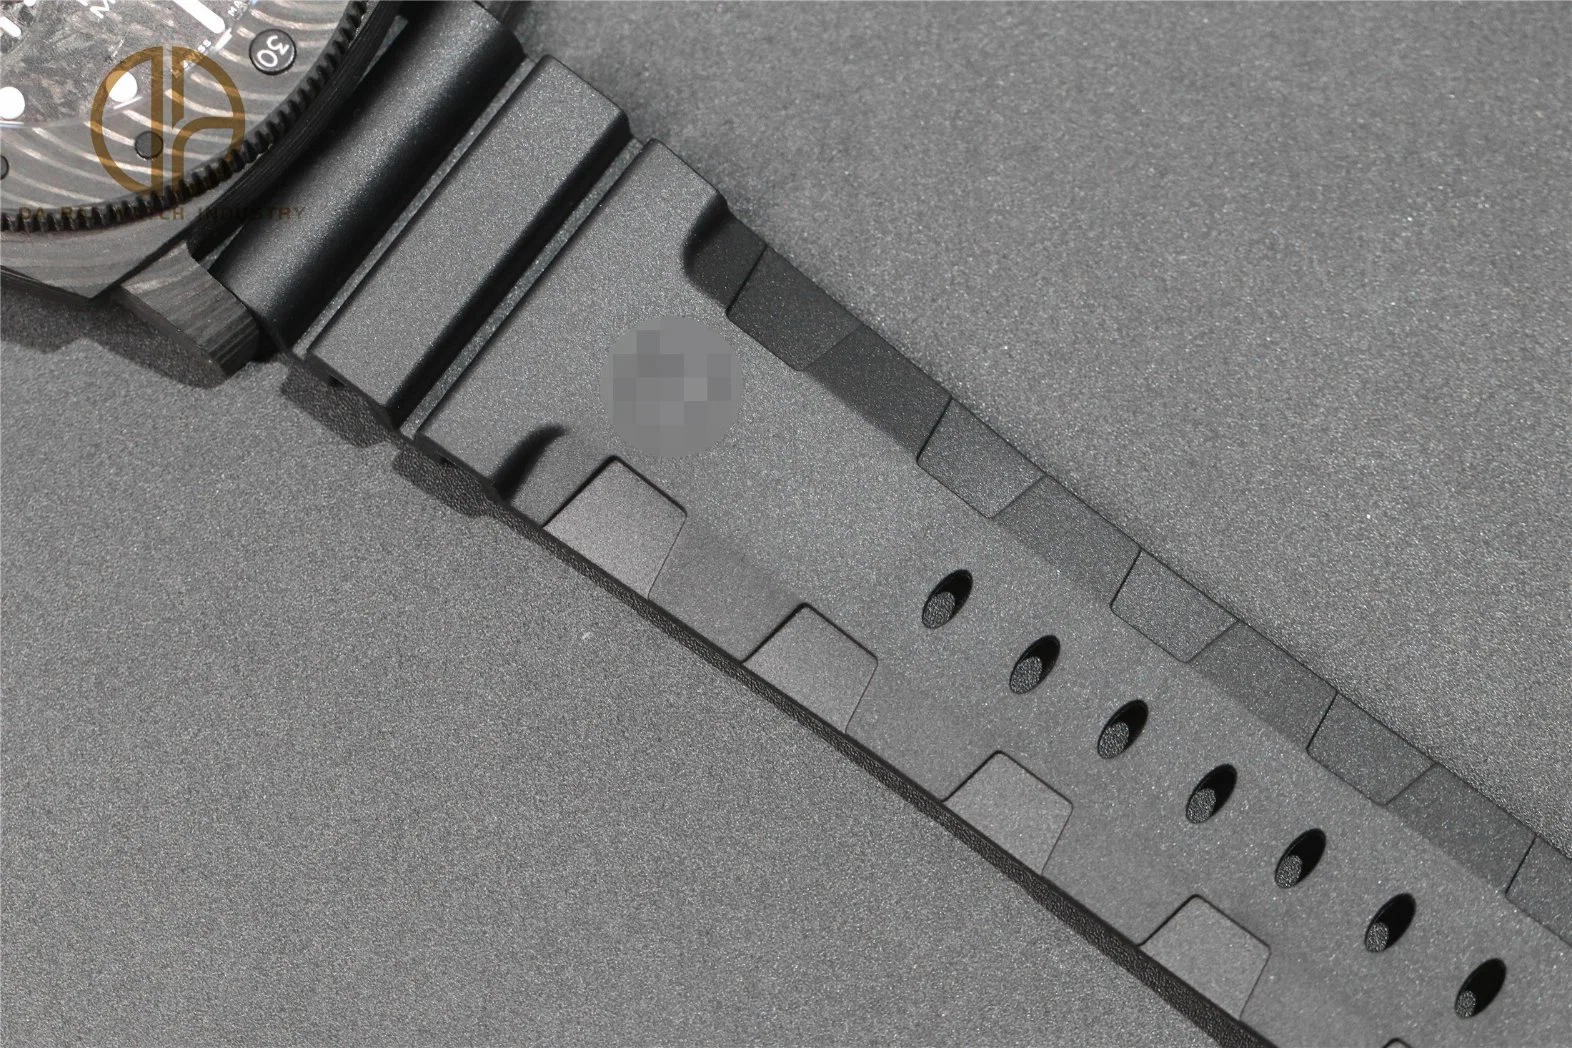 Super Clone Watch Vs Factory 979 Luxury 5A Watch P9001 Movement Ceramics Watch Carbon Fiber Watch Men's Mechanical Watch